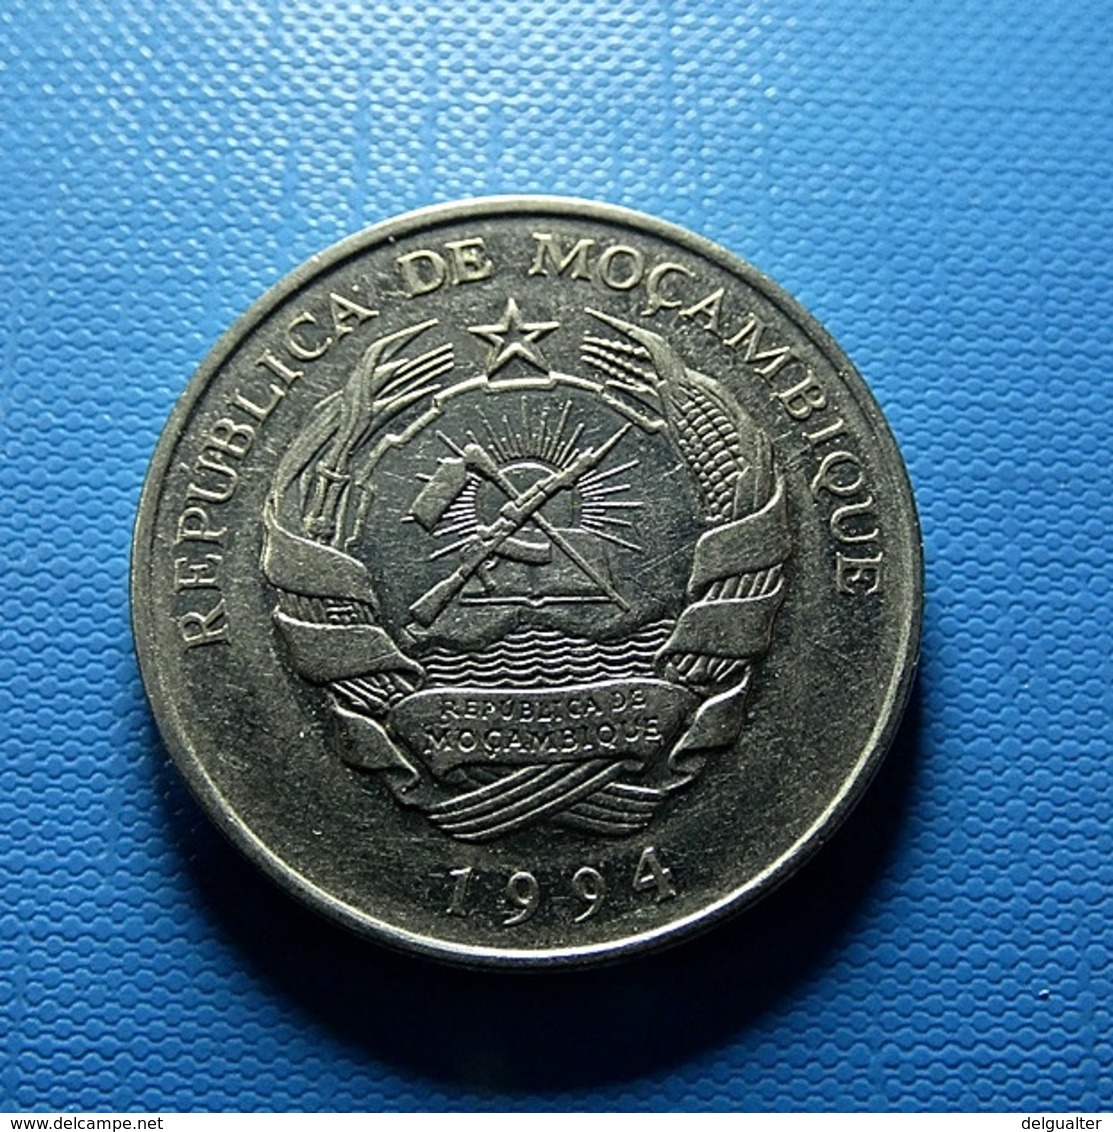 Moçambique 500 Meticais 1994 - Mozambique